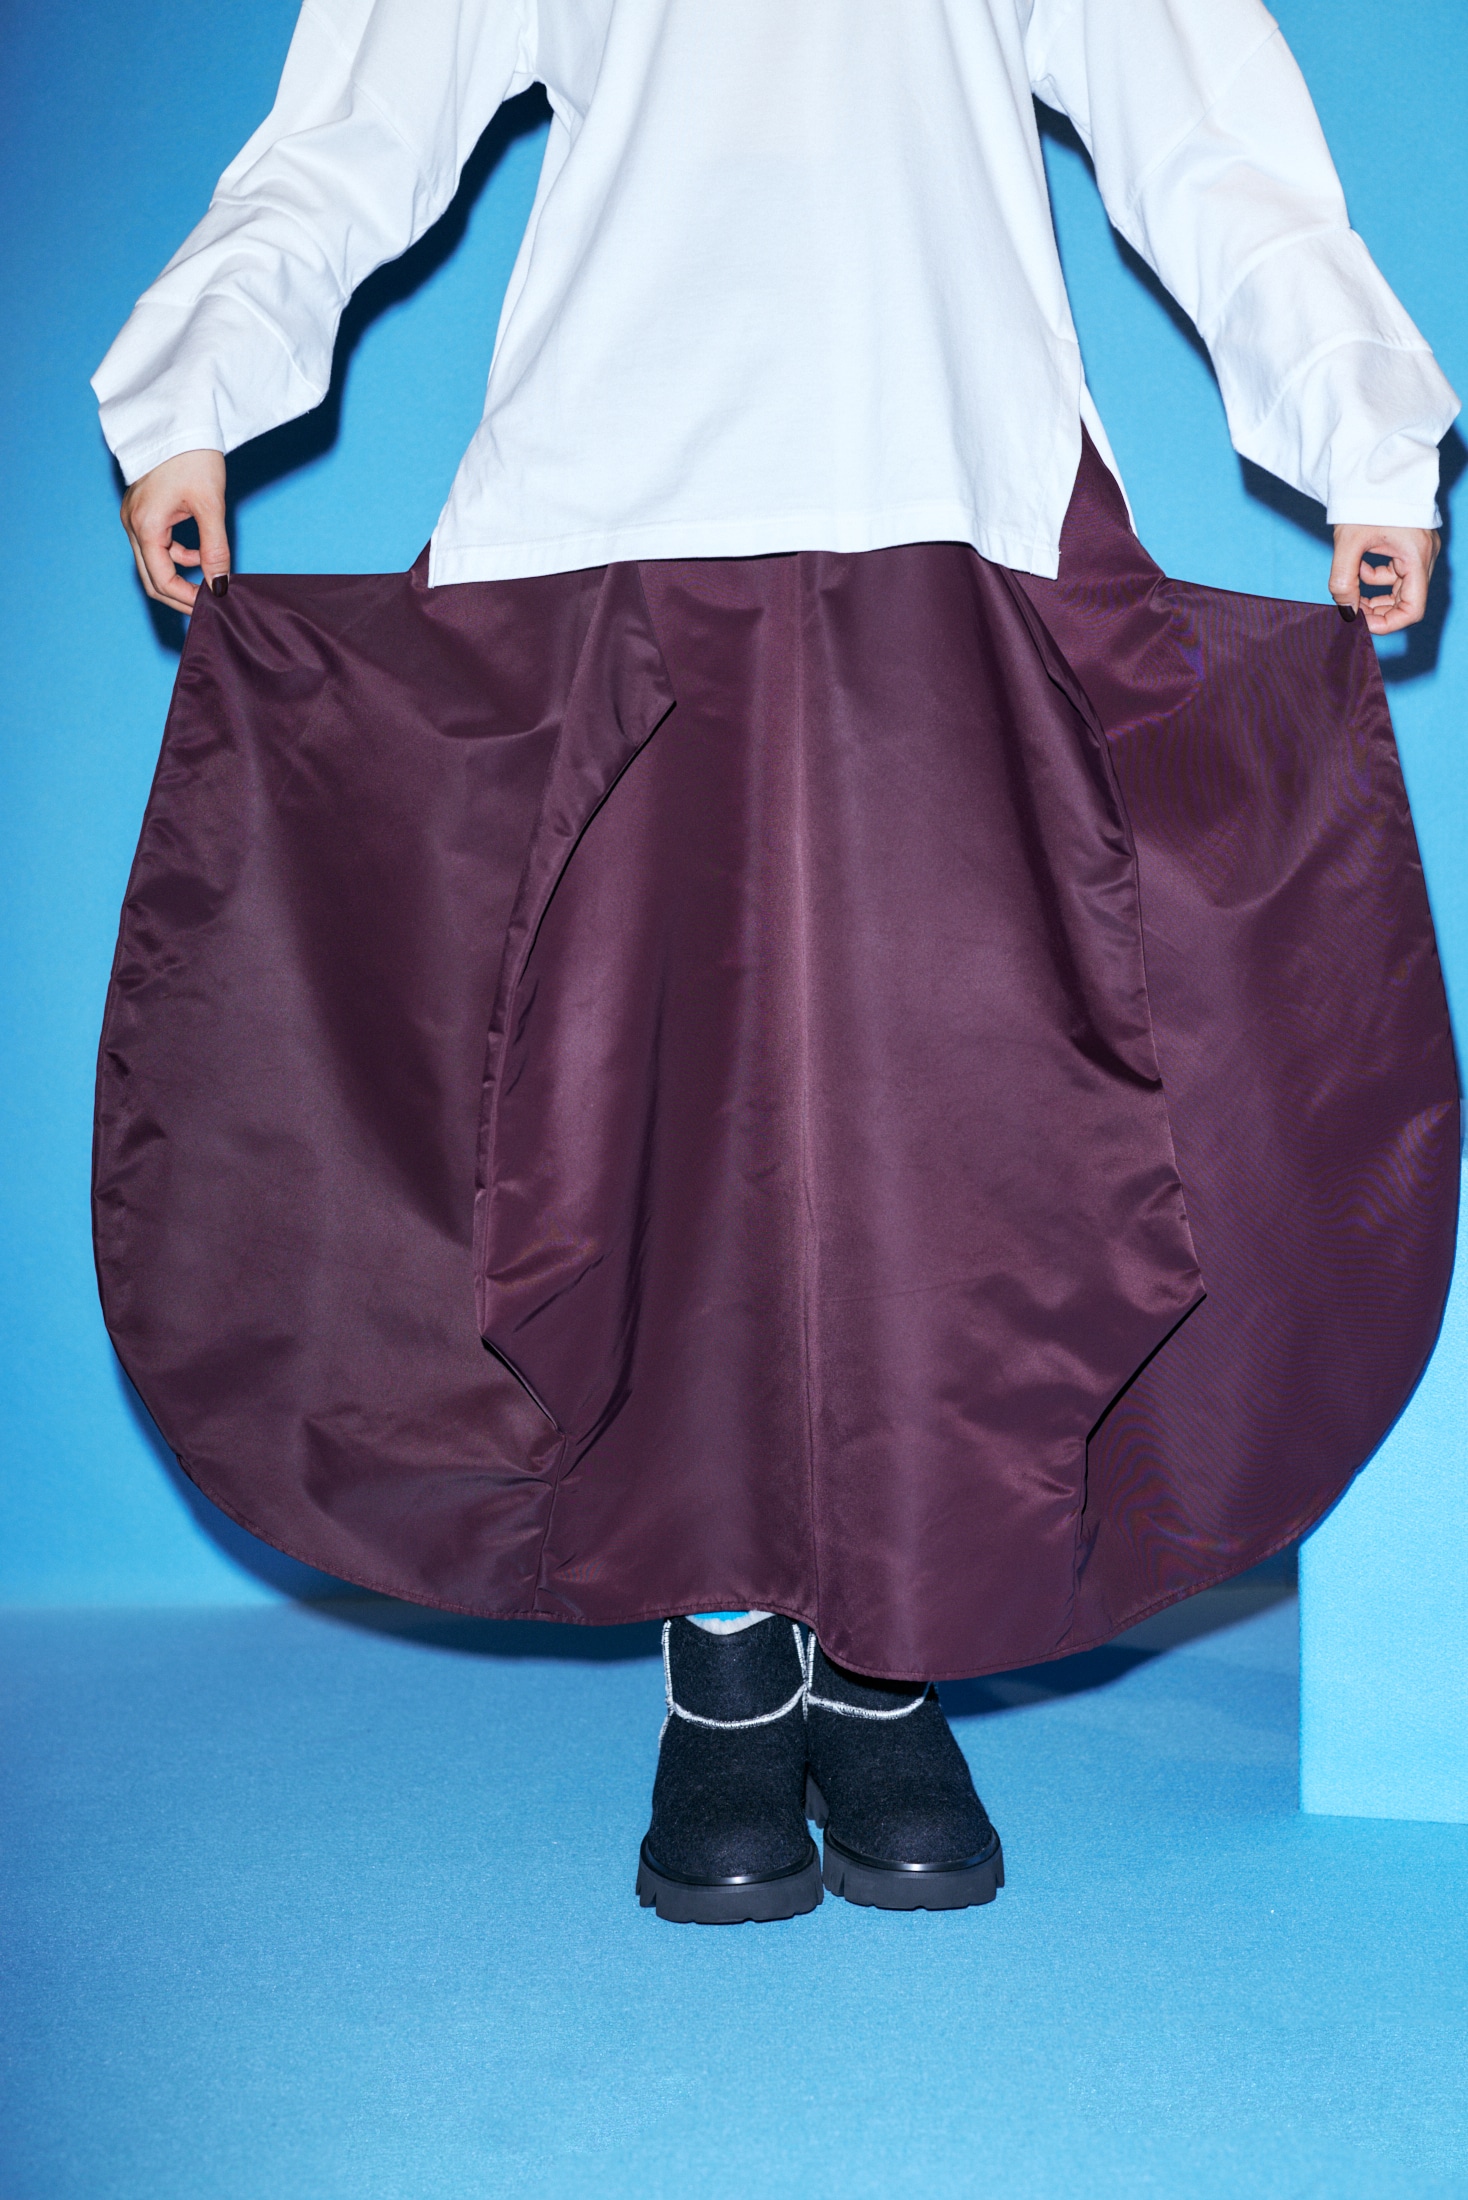 folding skirt